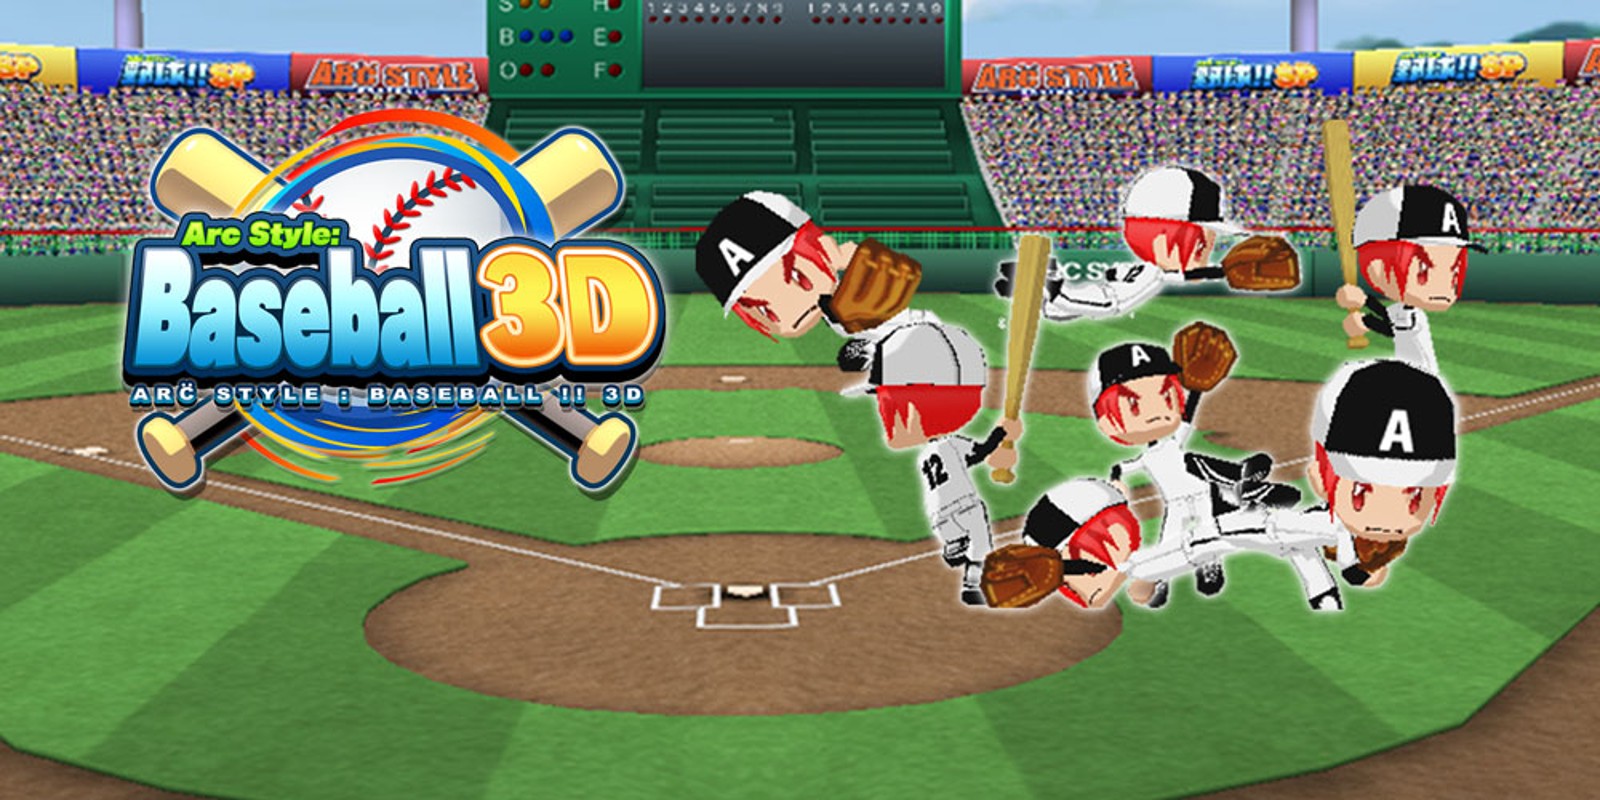 Бейсбол 3. Бейсбол игра на Нинтендо. Arc Style - Baseball 3d 3ds. Лучшие игры для Nintendo на двоих игроков. Microsoft Baseball 3d 1998 Edition.